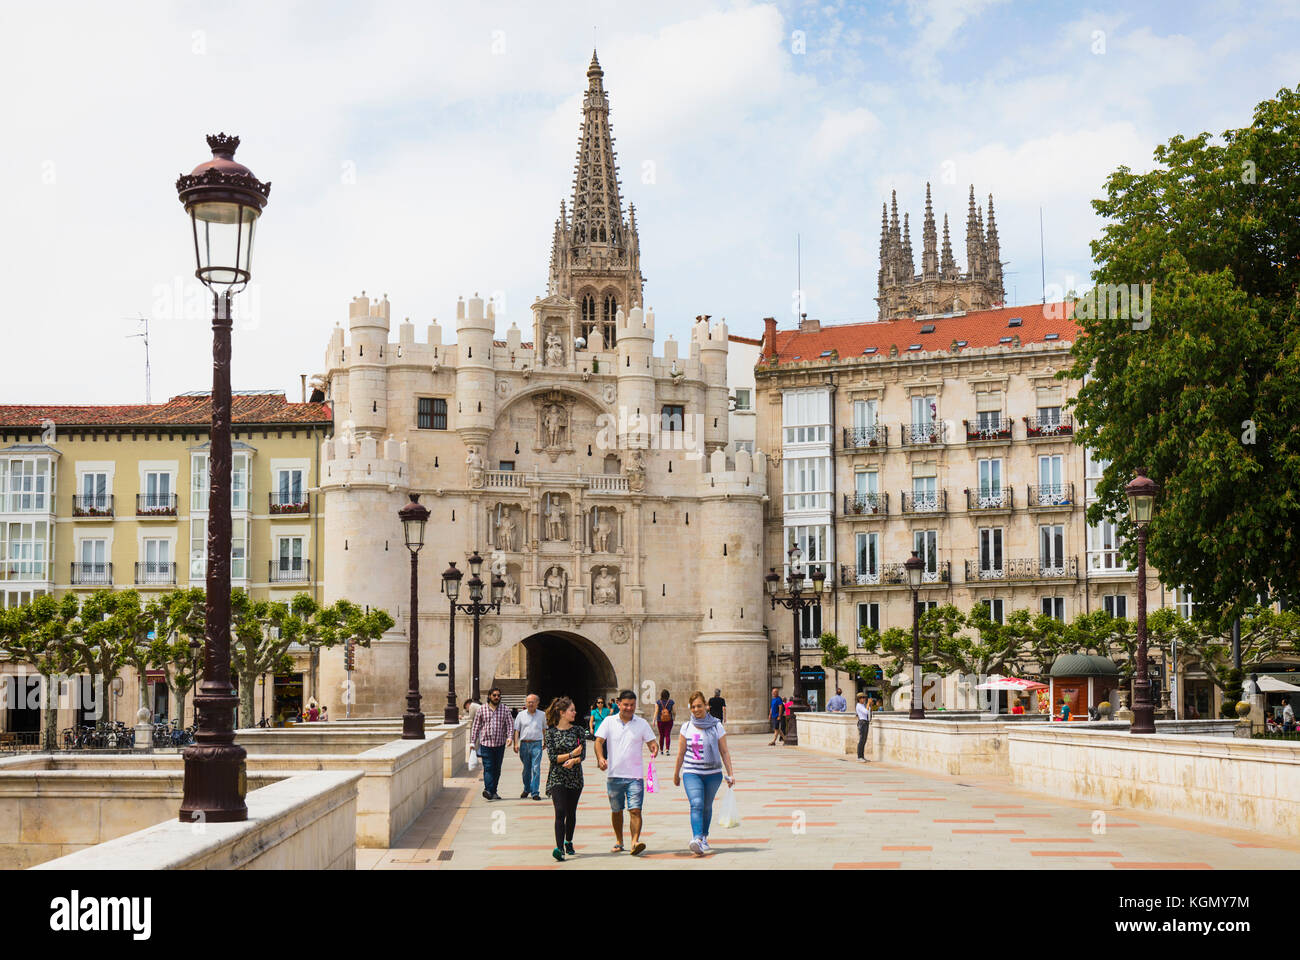 Burgos, Burgos province, Castille-et-León, Espagne. la porte de la ville connu sous le nom de Arco de santa maria. Banque D'Images